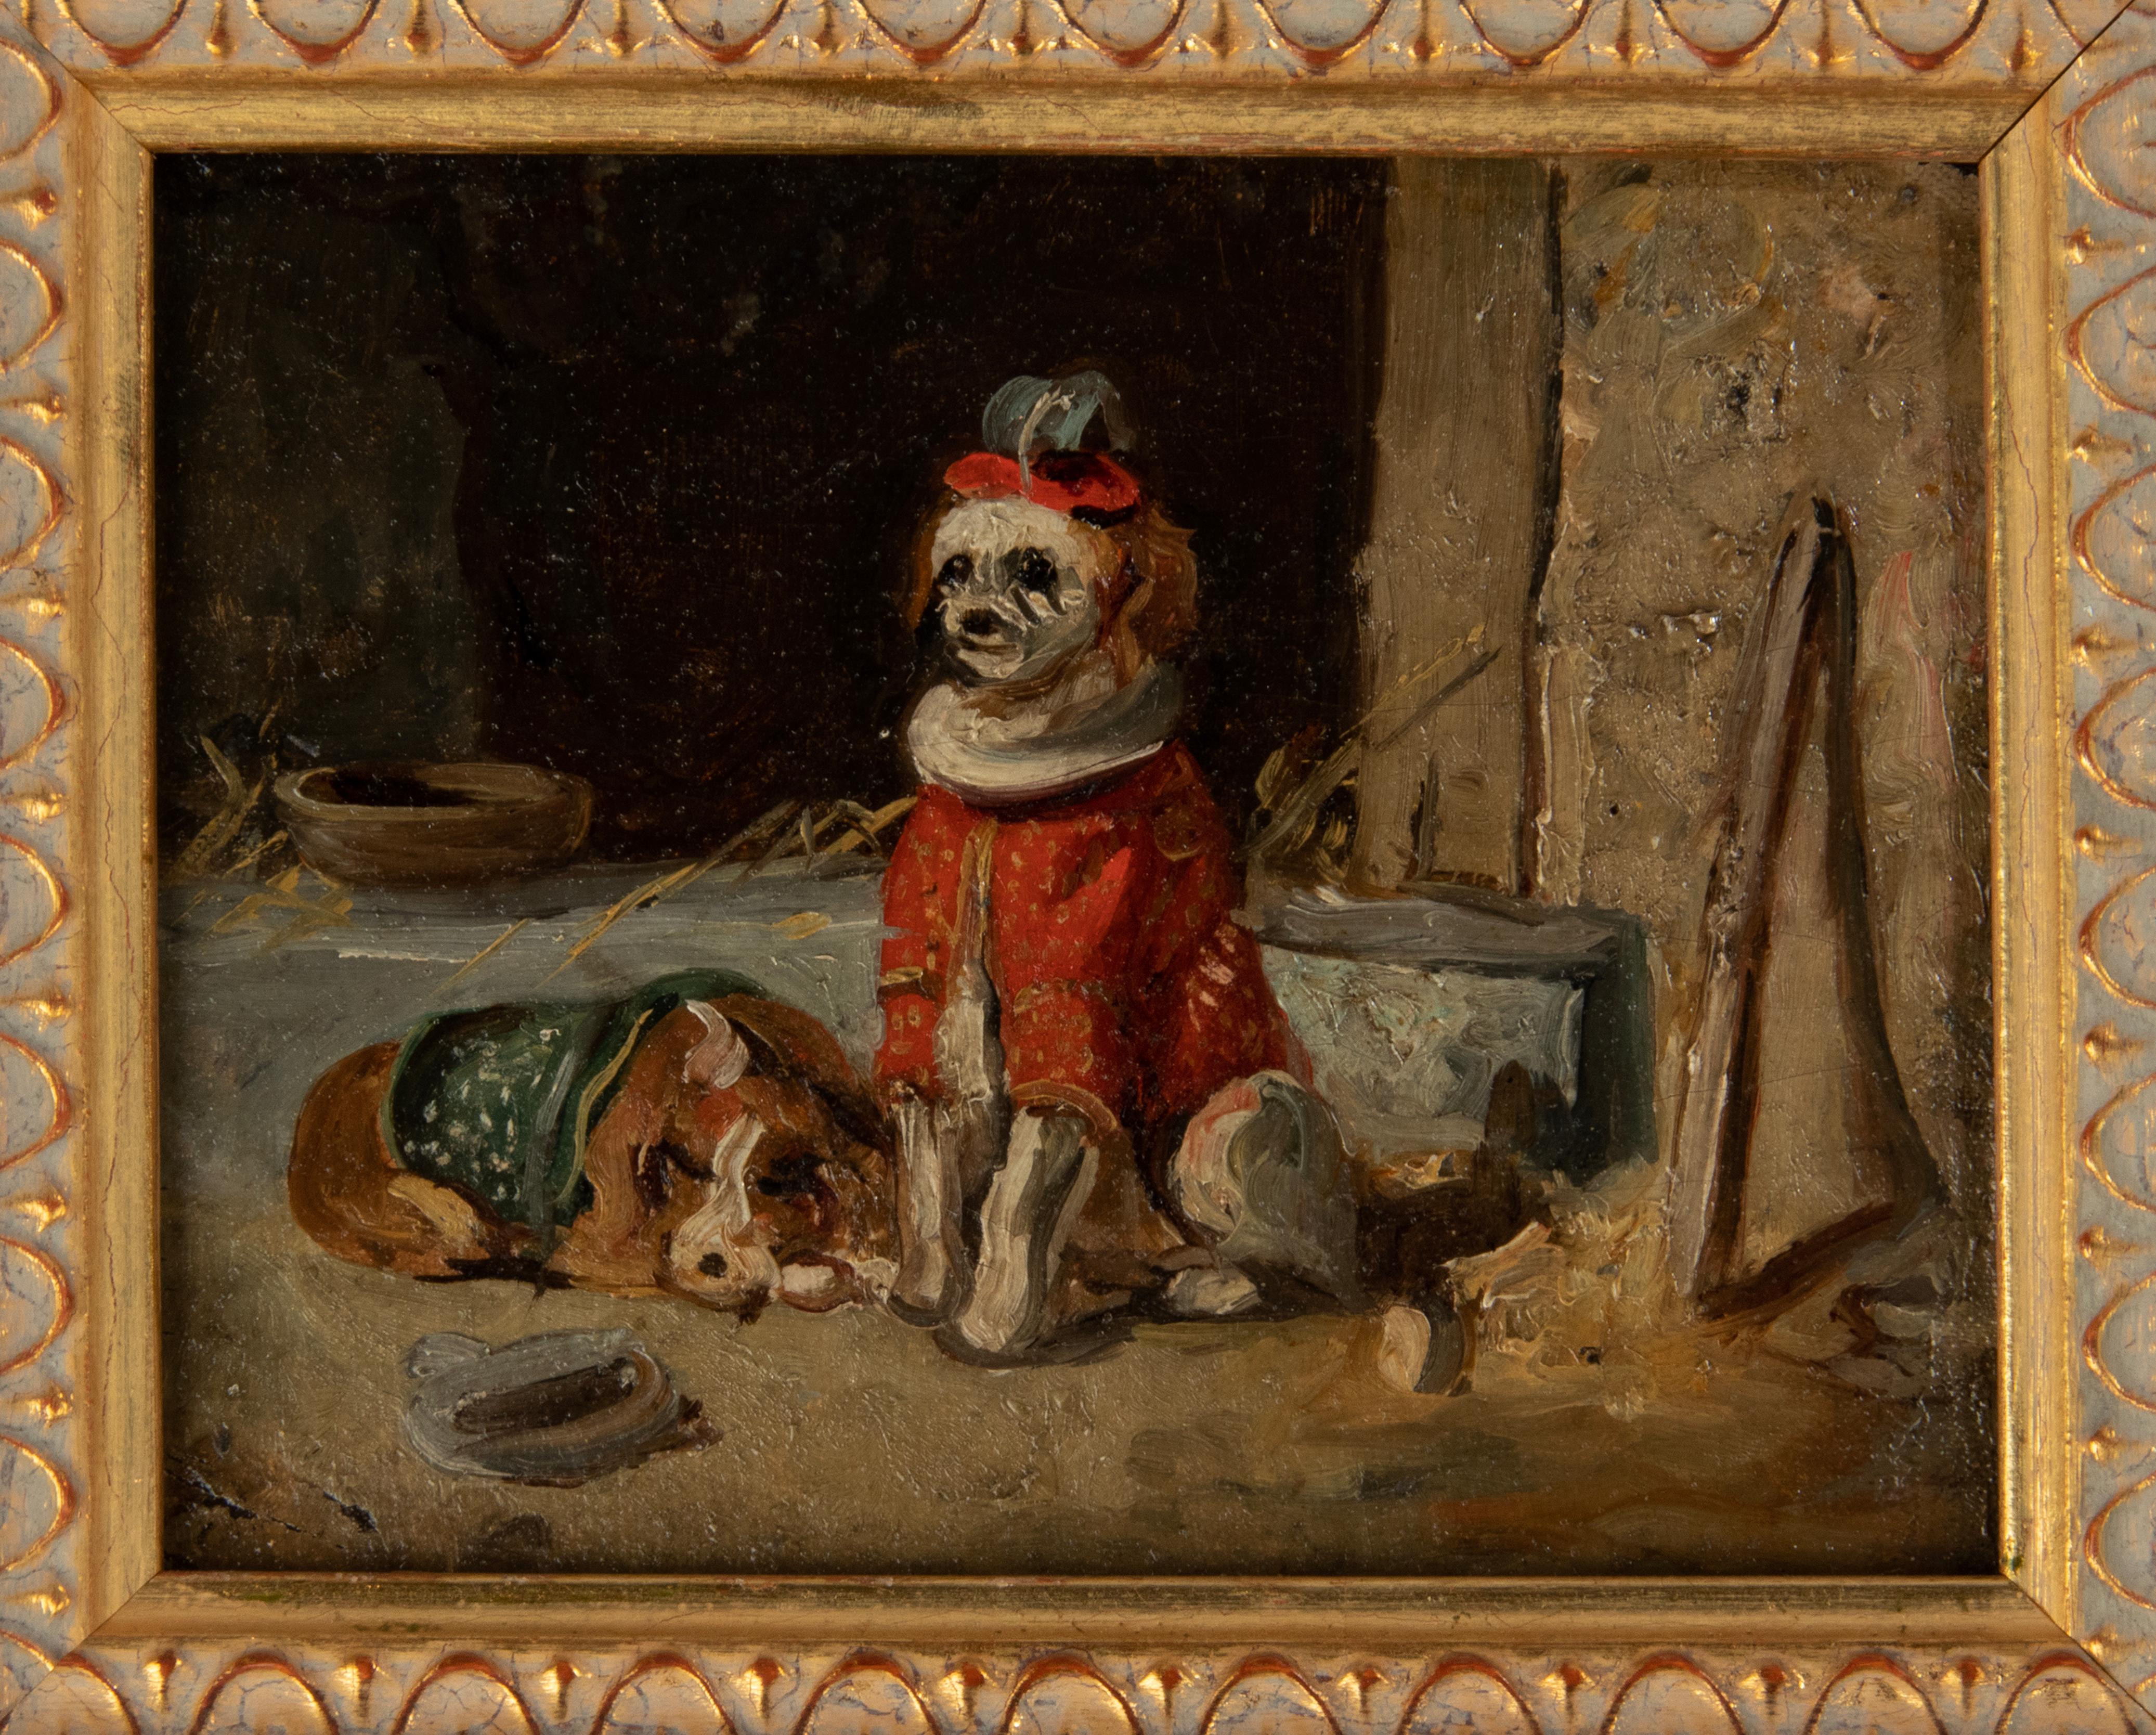 Un gentil petit tableau représentant deux chiens de cirque déguisés. Les chiens sont peints sur un fond sobre.
Il s'agit d'une peinture à l'huile sur panneau datant d'environ 1900. Vraisemblablement d'origine belge ou française. Le tableau n'est